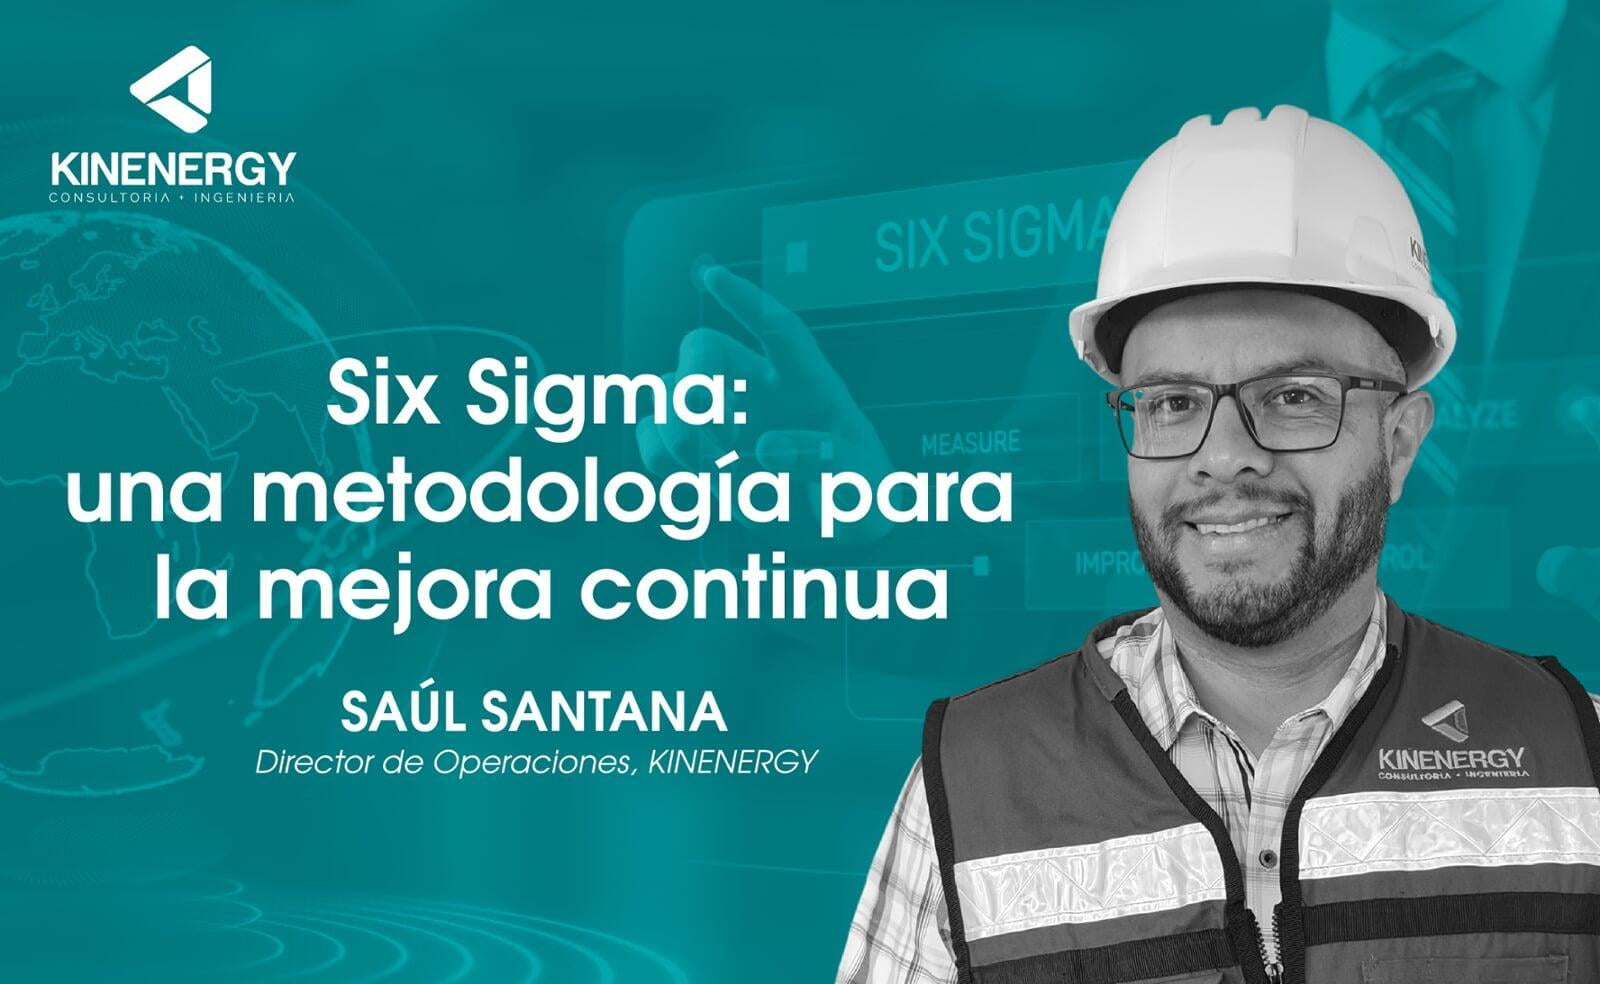 Six Sigma: una metodología para la mejora continua